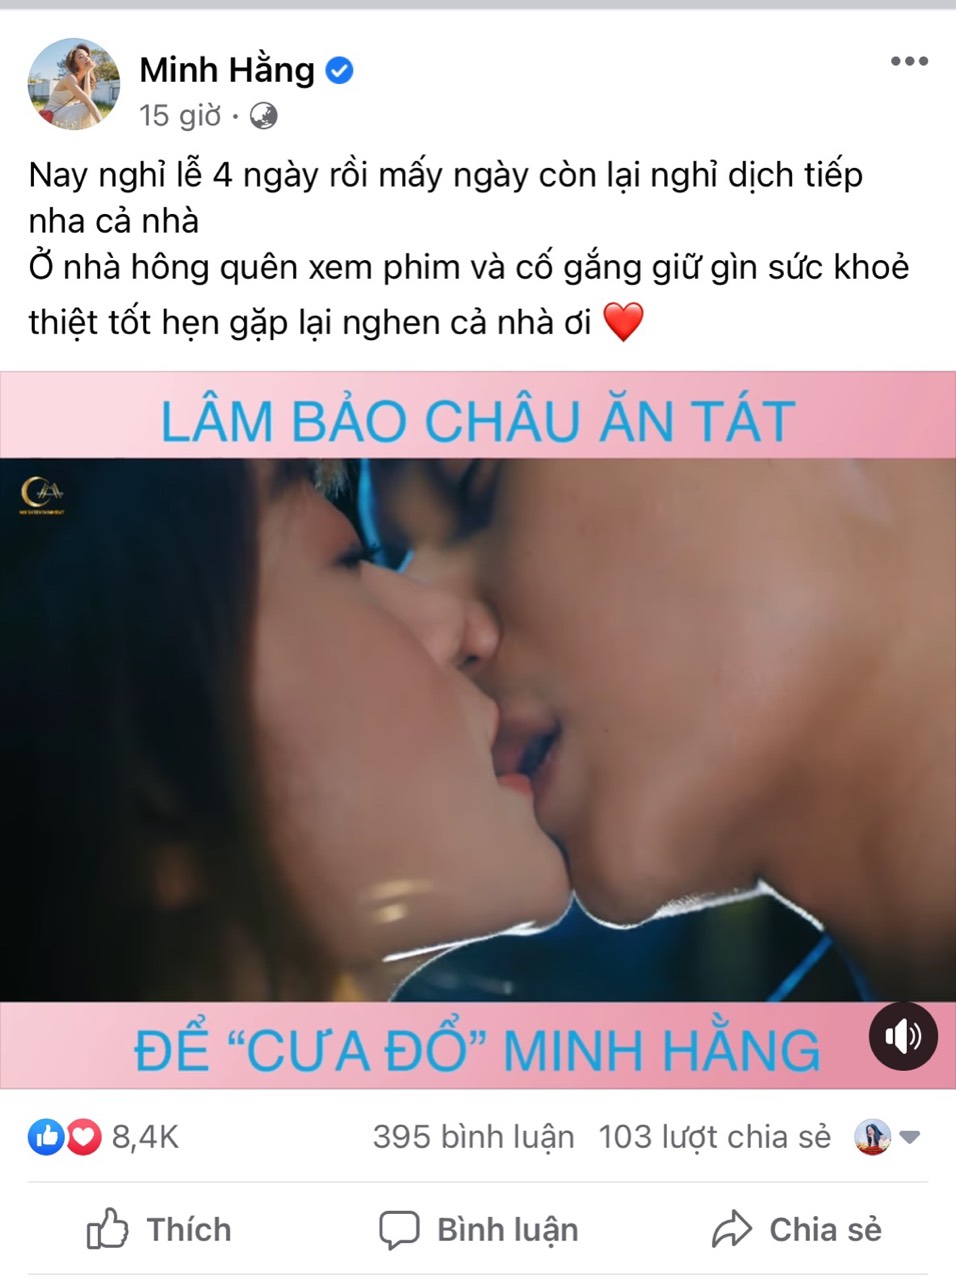 Clip tình cảm giữa nữ diễn viên và Lâm Bảo Châu được Minh Hằng đăng tải cách đây ít giờ